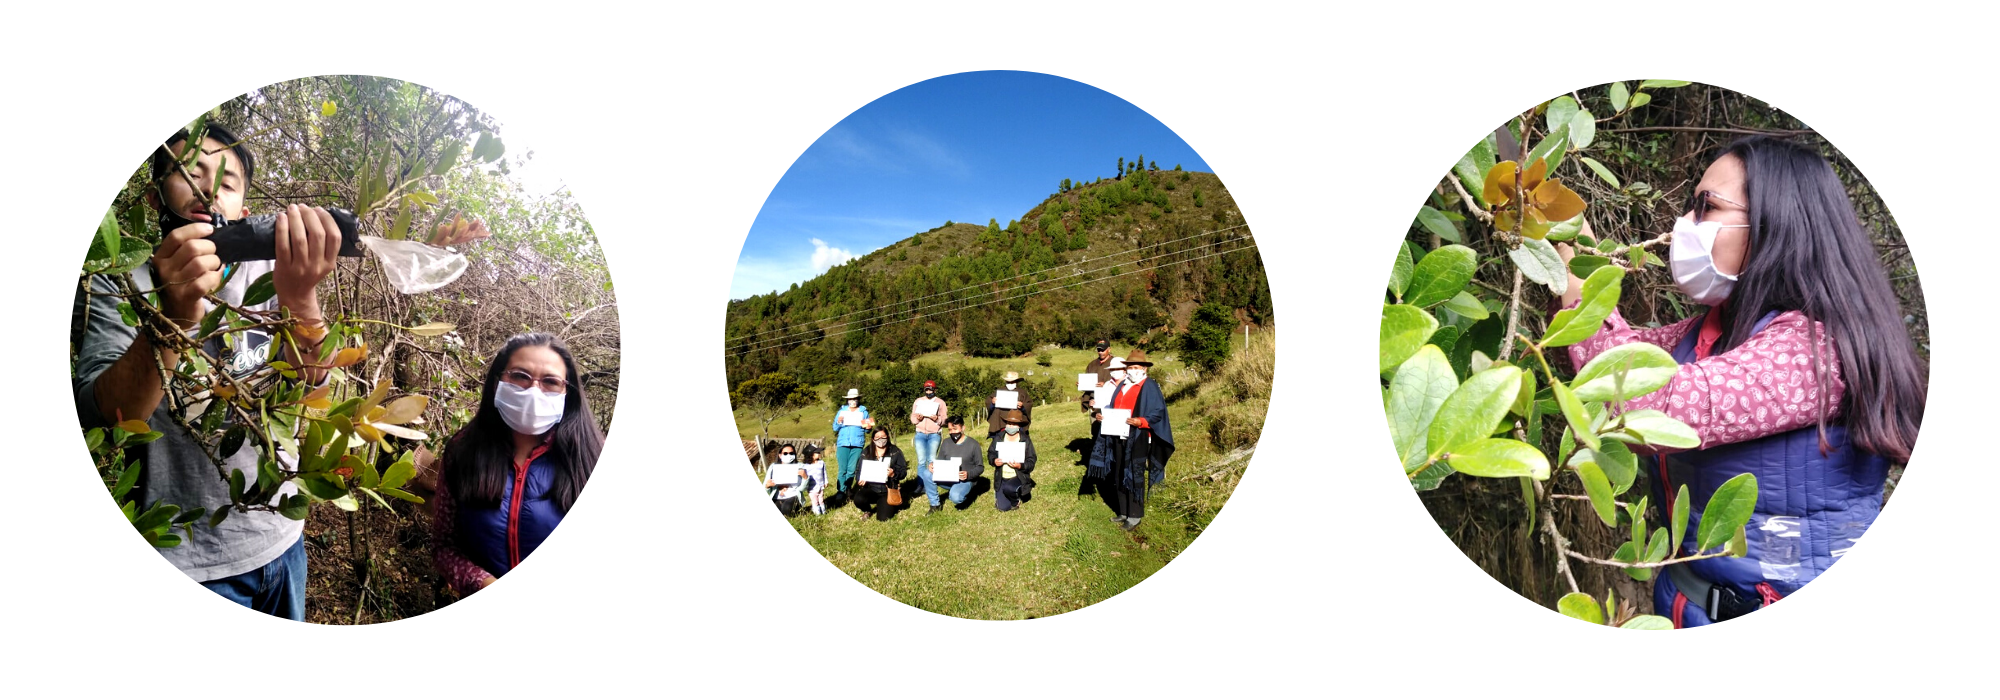 Grupo comunitario Asociación Ecológica de Producción de Frutos Andinos